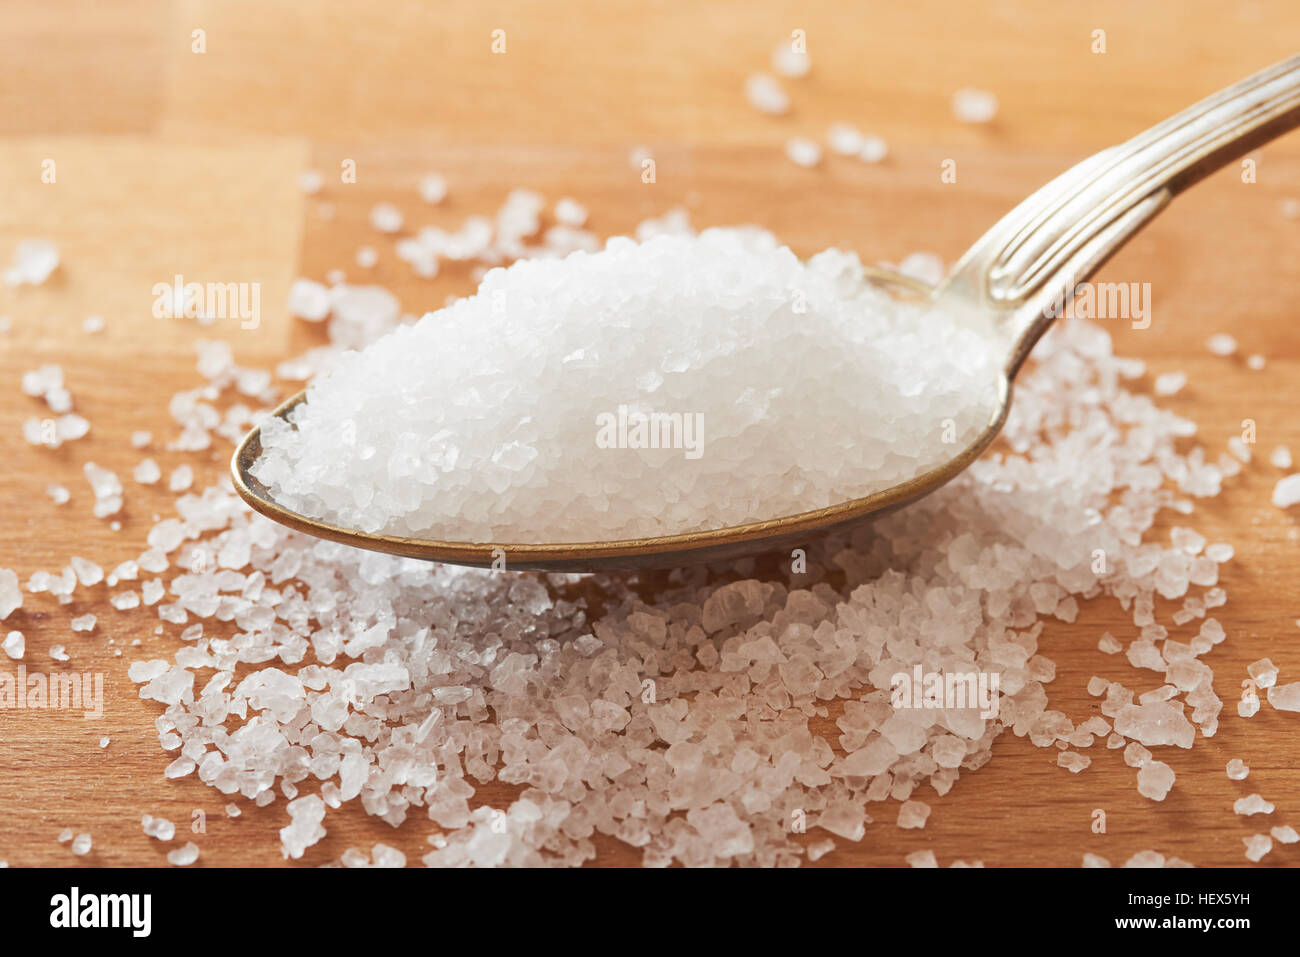 Le sel de mer dans une cuillère sur table en bois Banque D'Images